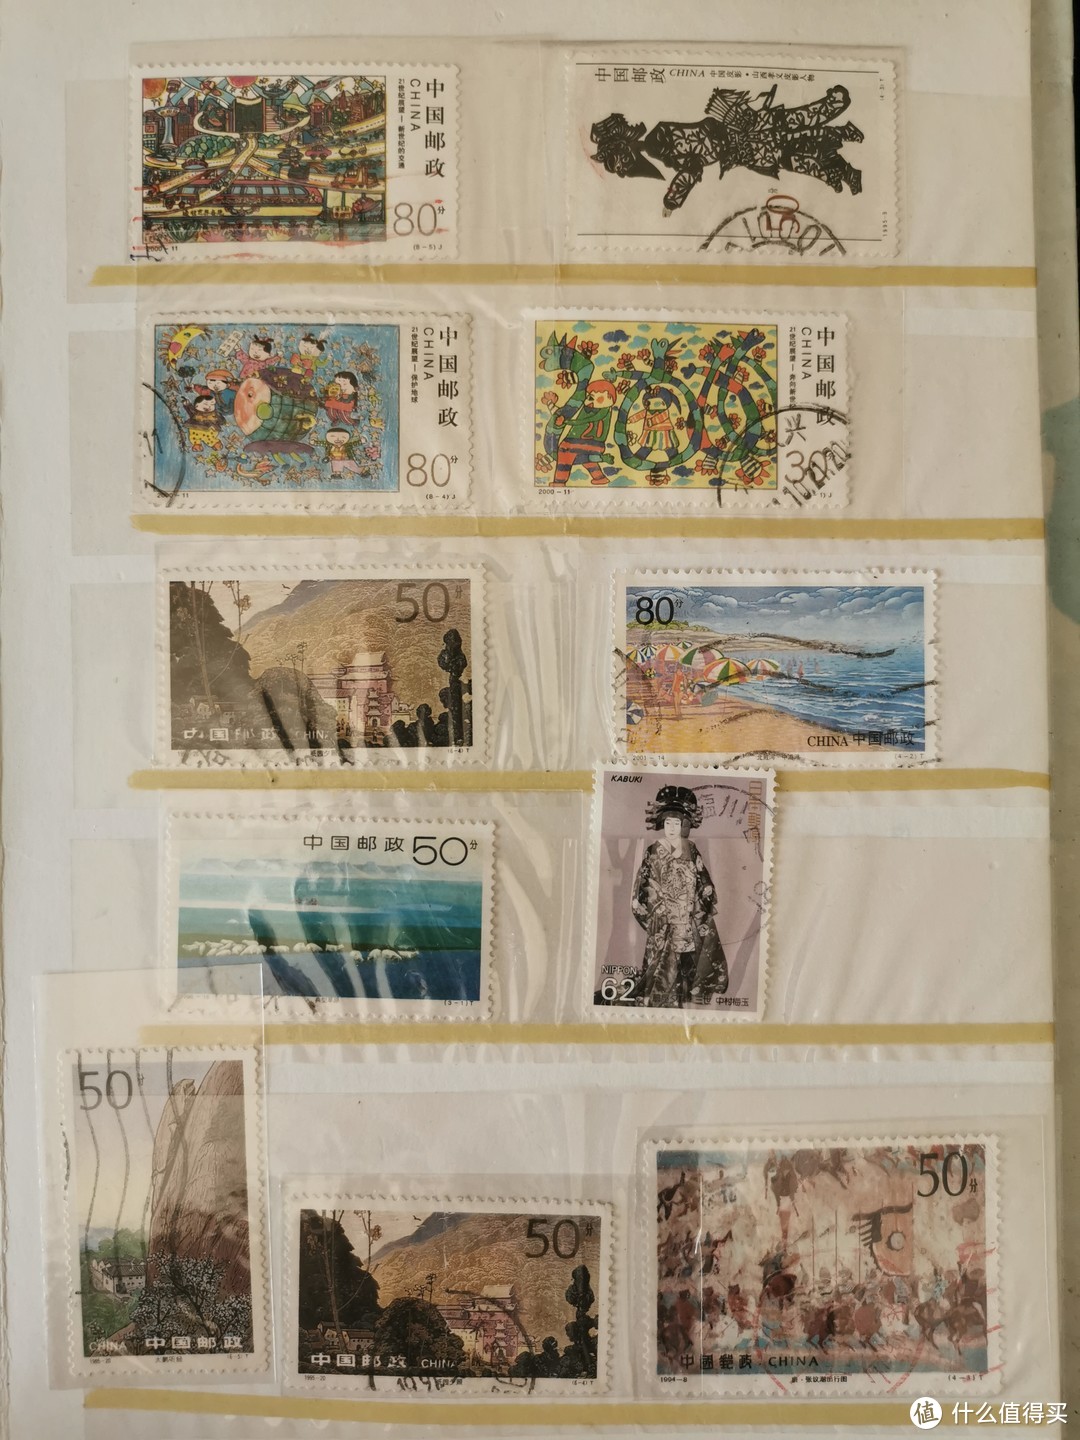 散装的集邮者的邮票分享